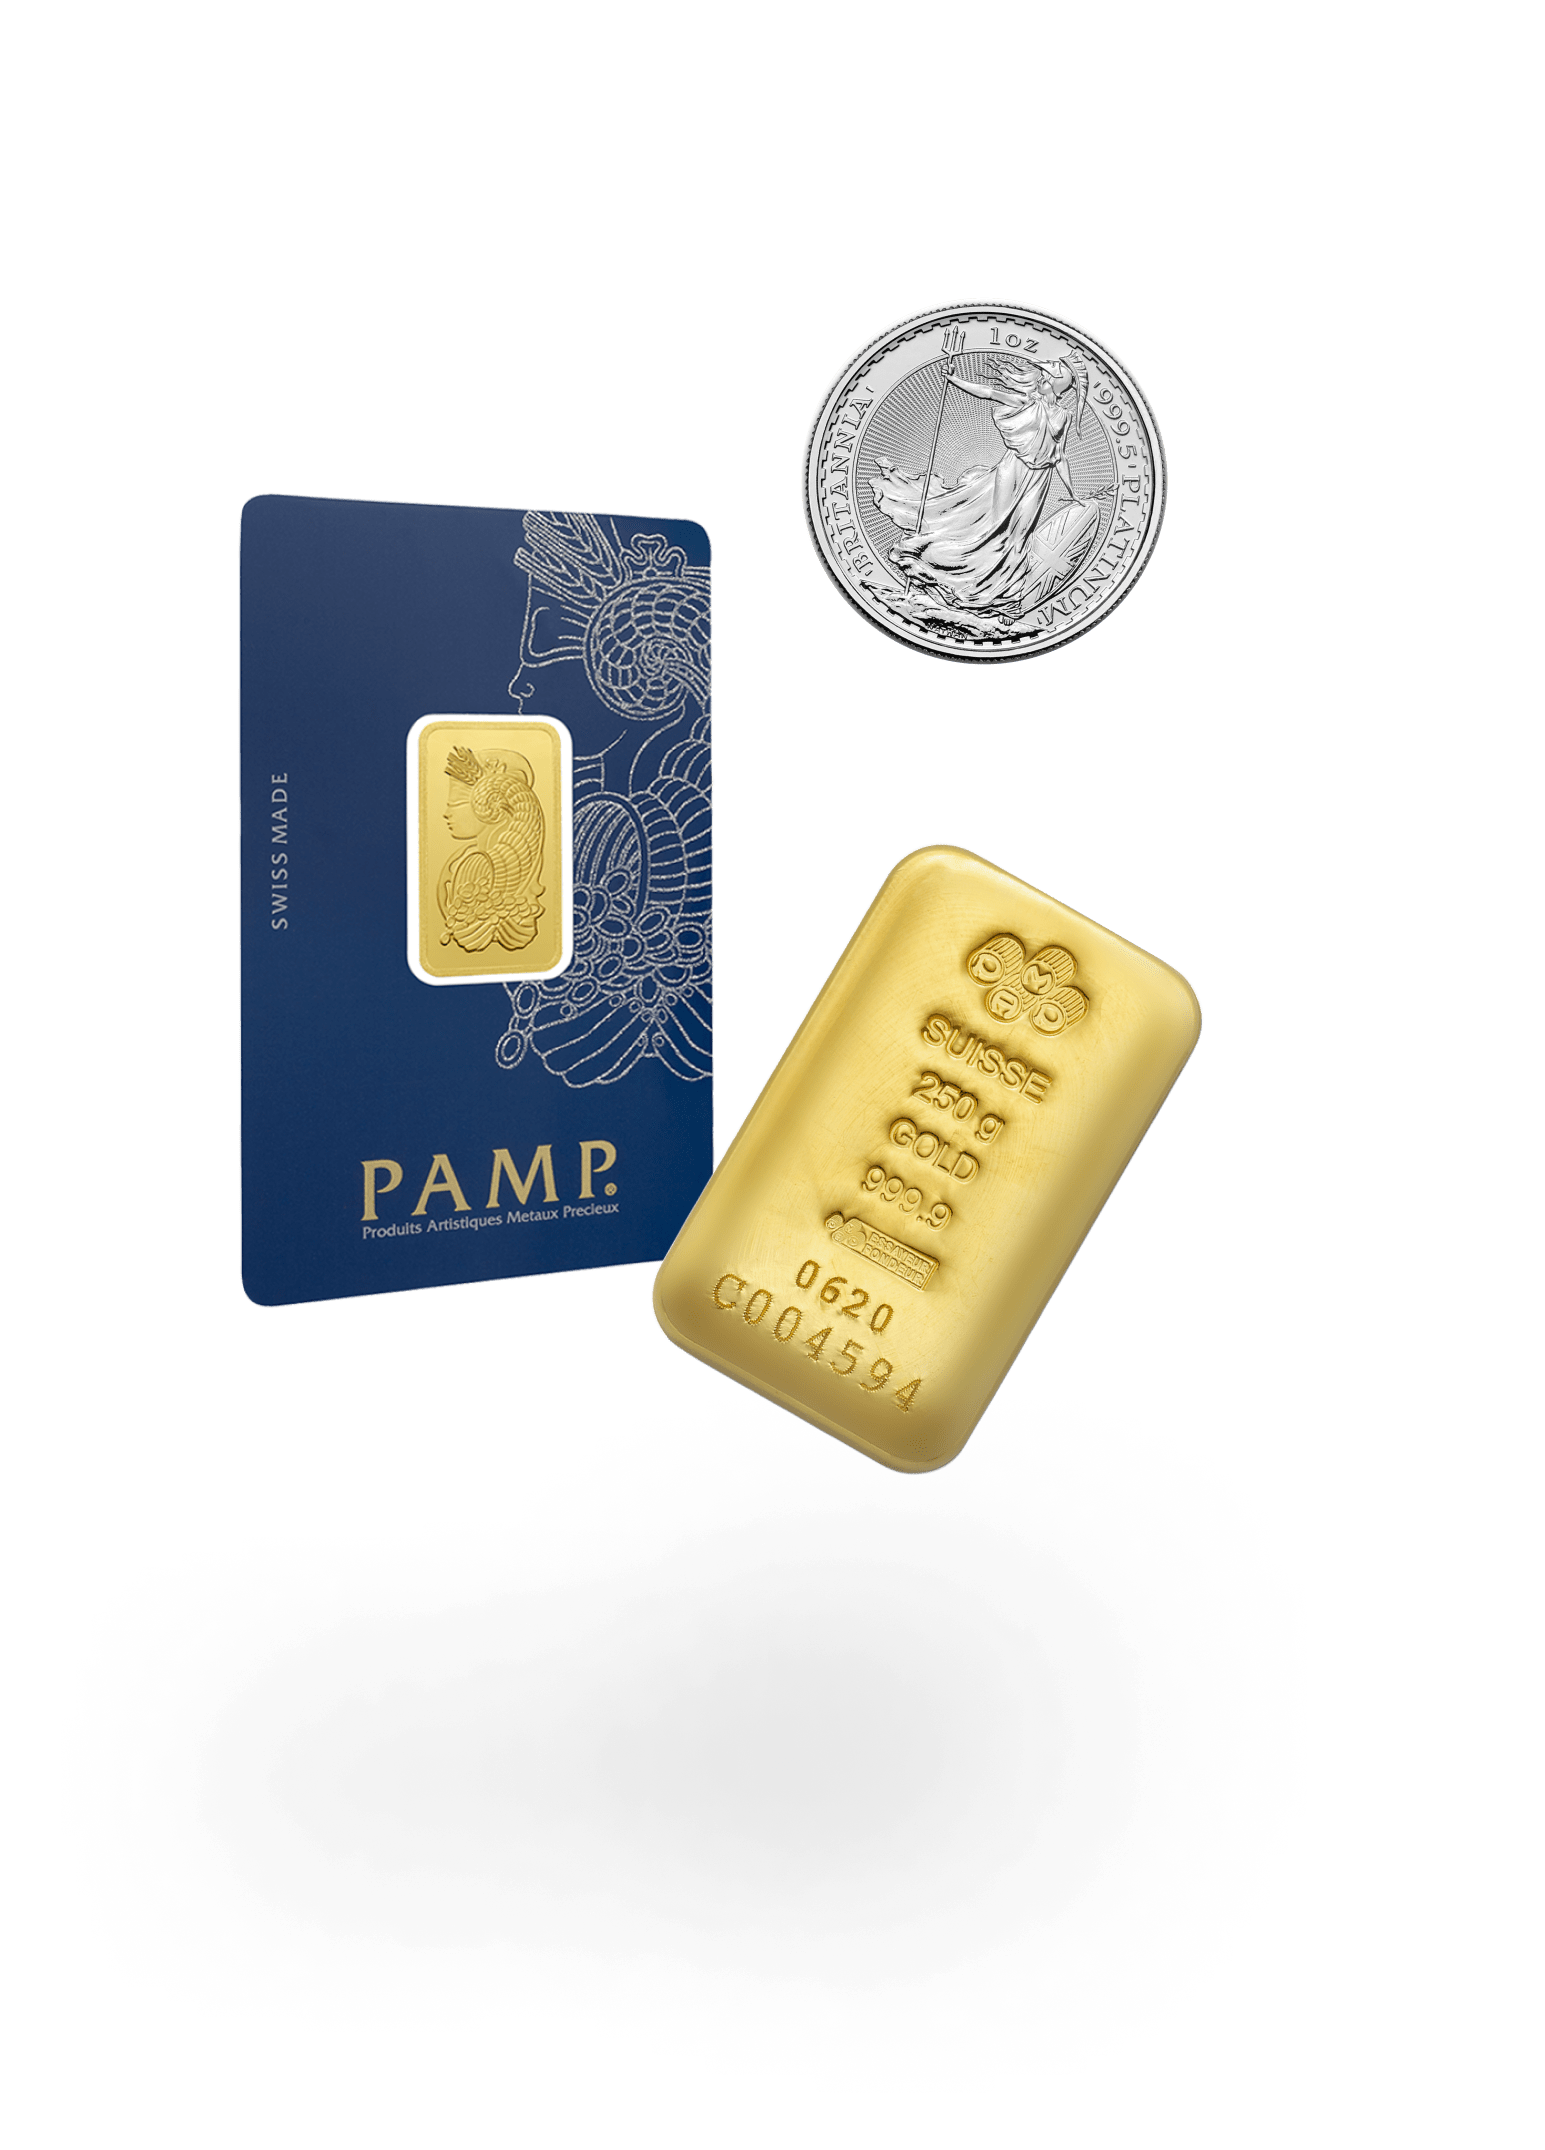 Goldmünzen und -barren kaufen von PAMP und namhafte Münzen auf dem Sparassistenten, wie 1 kg Goldbarren oder 1 oz Britannia oder 5 g Lady Fortuna Goldbarren